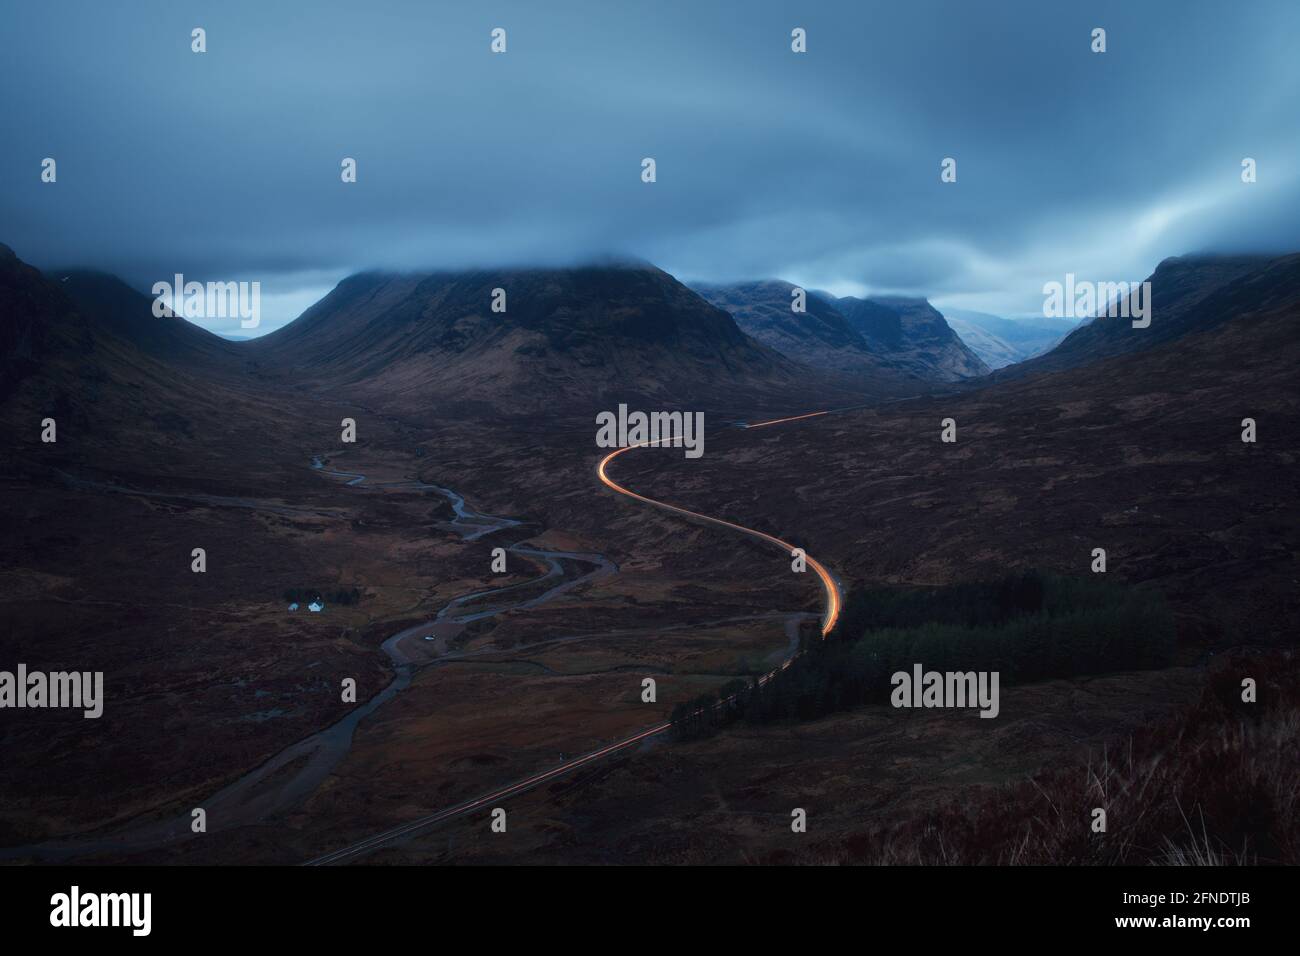 Paisaje matutino con luces de coche en la carretera de montaña que conduce a Glencoe frente a Buachaille Etive Mor. A82 carretera antes del amanecer. Escocia Foto de stock